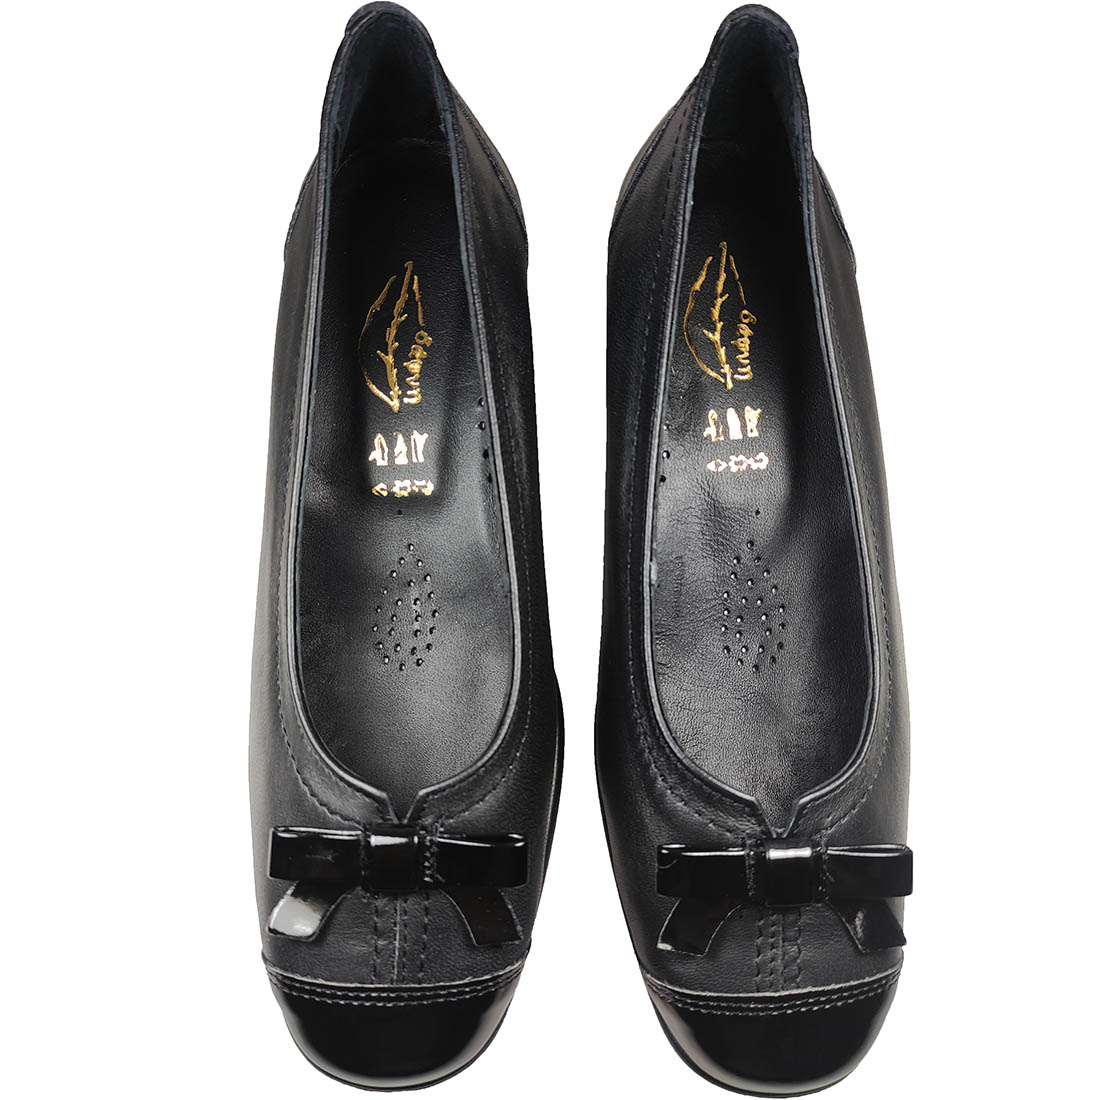 Dafni 440 Black Leather Heels